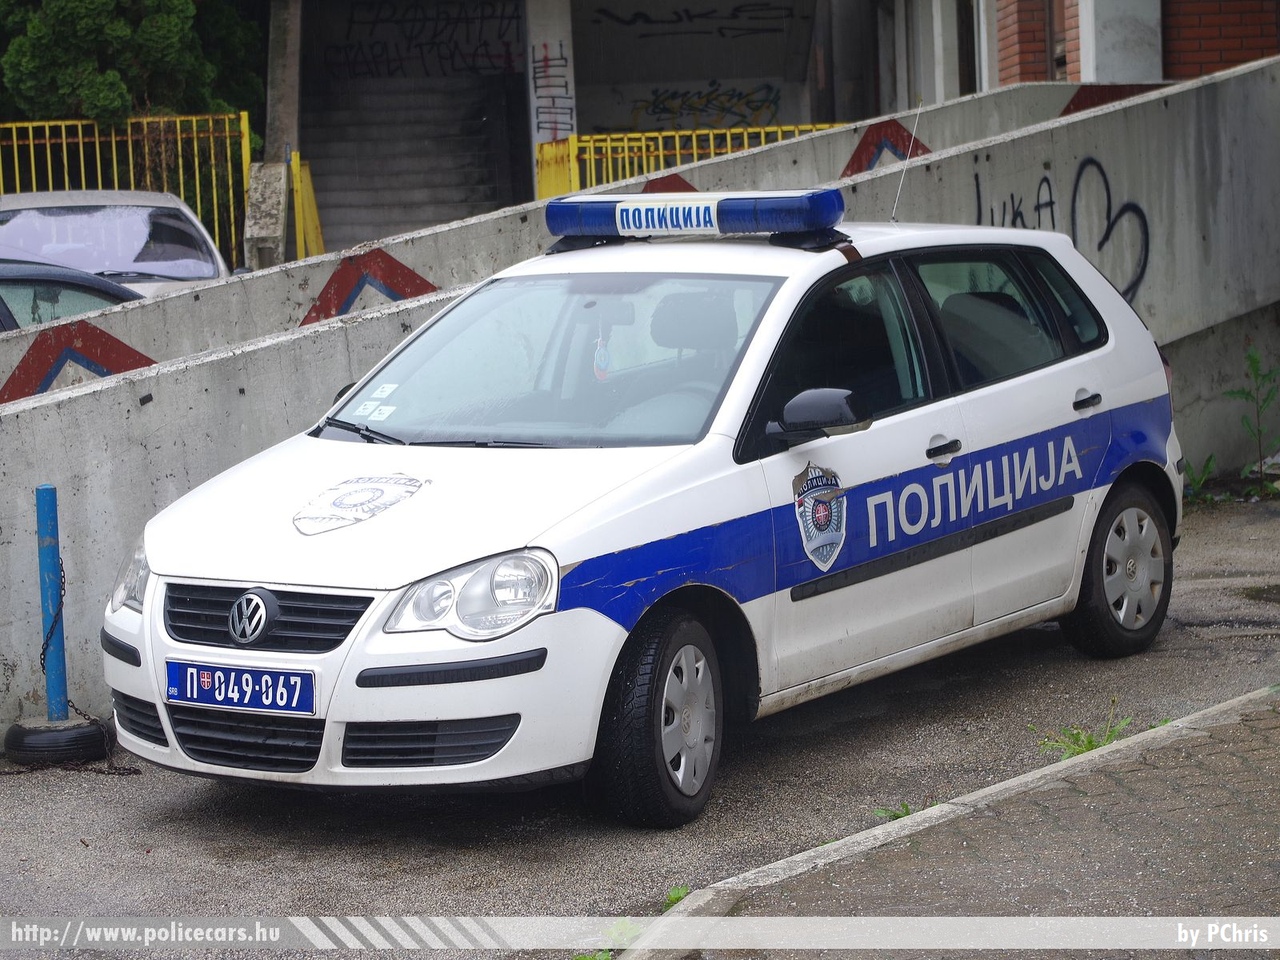 Volkswagen Polo, fotó: PChris
Keywords: szerb Szerbia rendőr rendőrautó rendőrség Serbia serbian police policecar